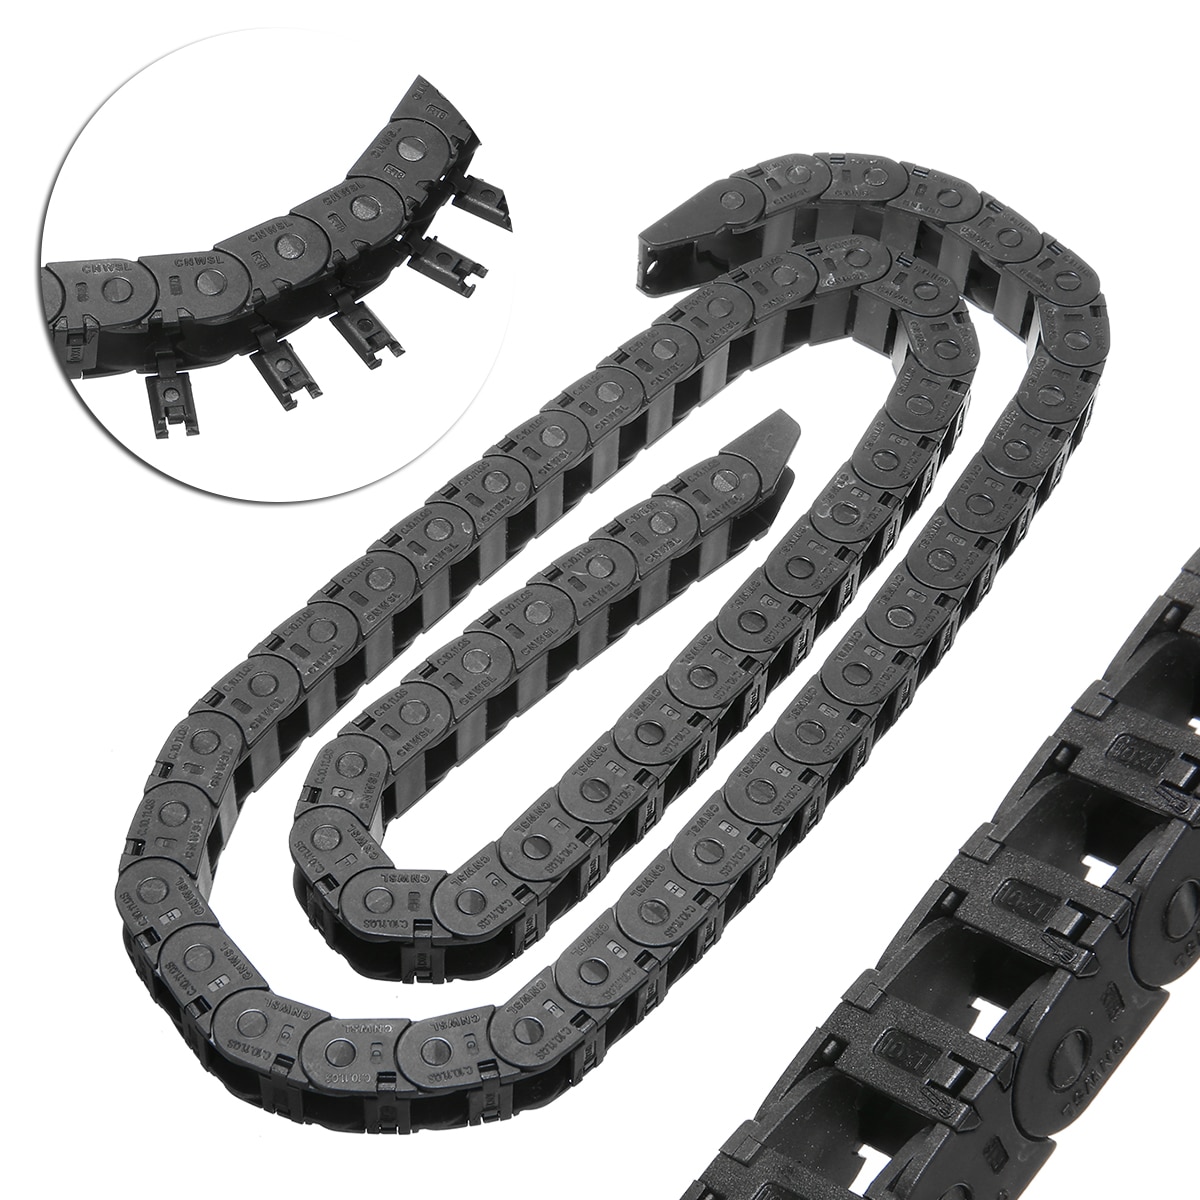 Sort mini energikæde 10*11mm nylon træk kæde 3d printer tank kædelængde 1m lang til cnc værktøjsmaskine